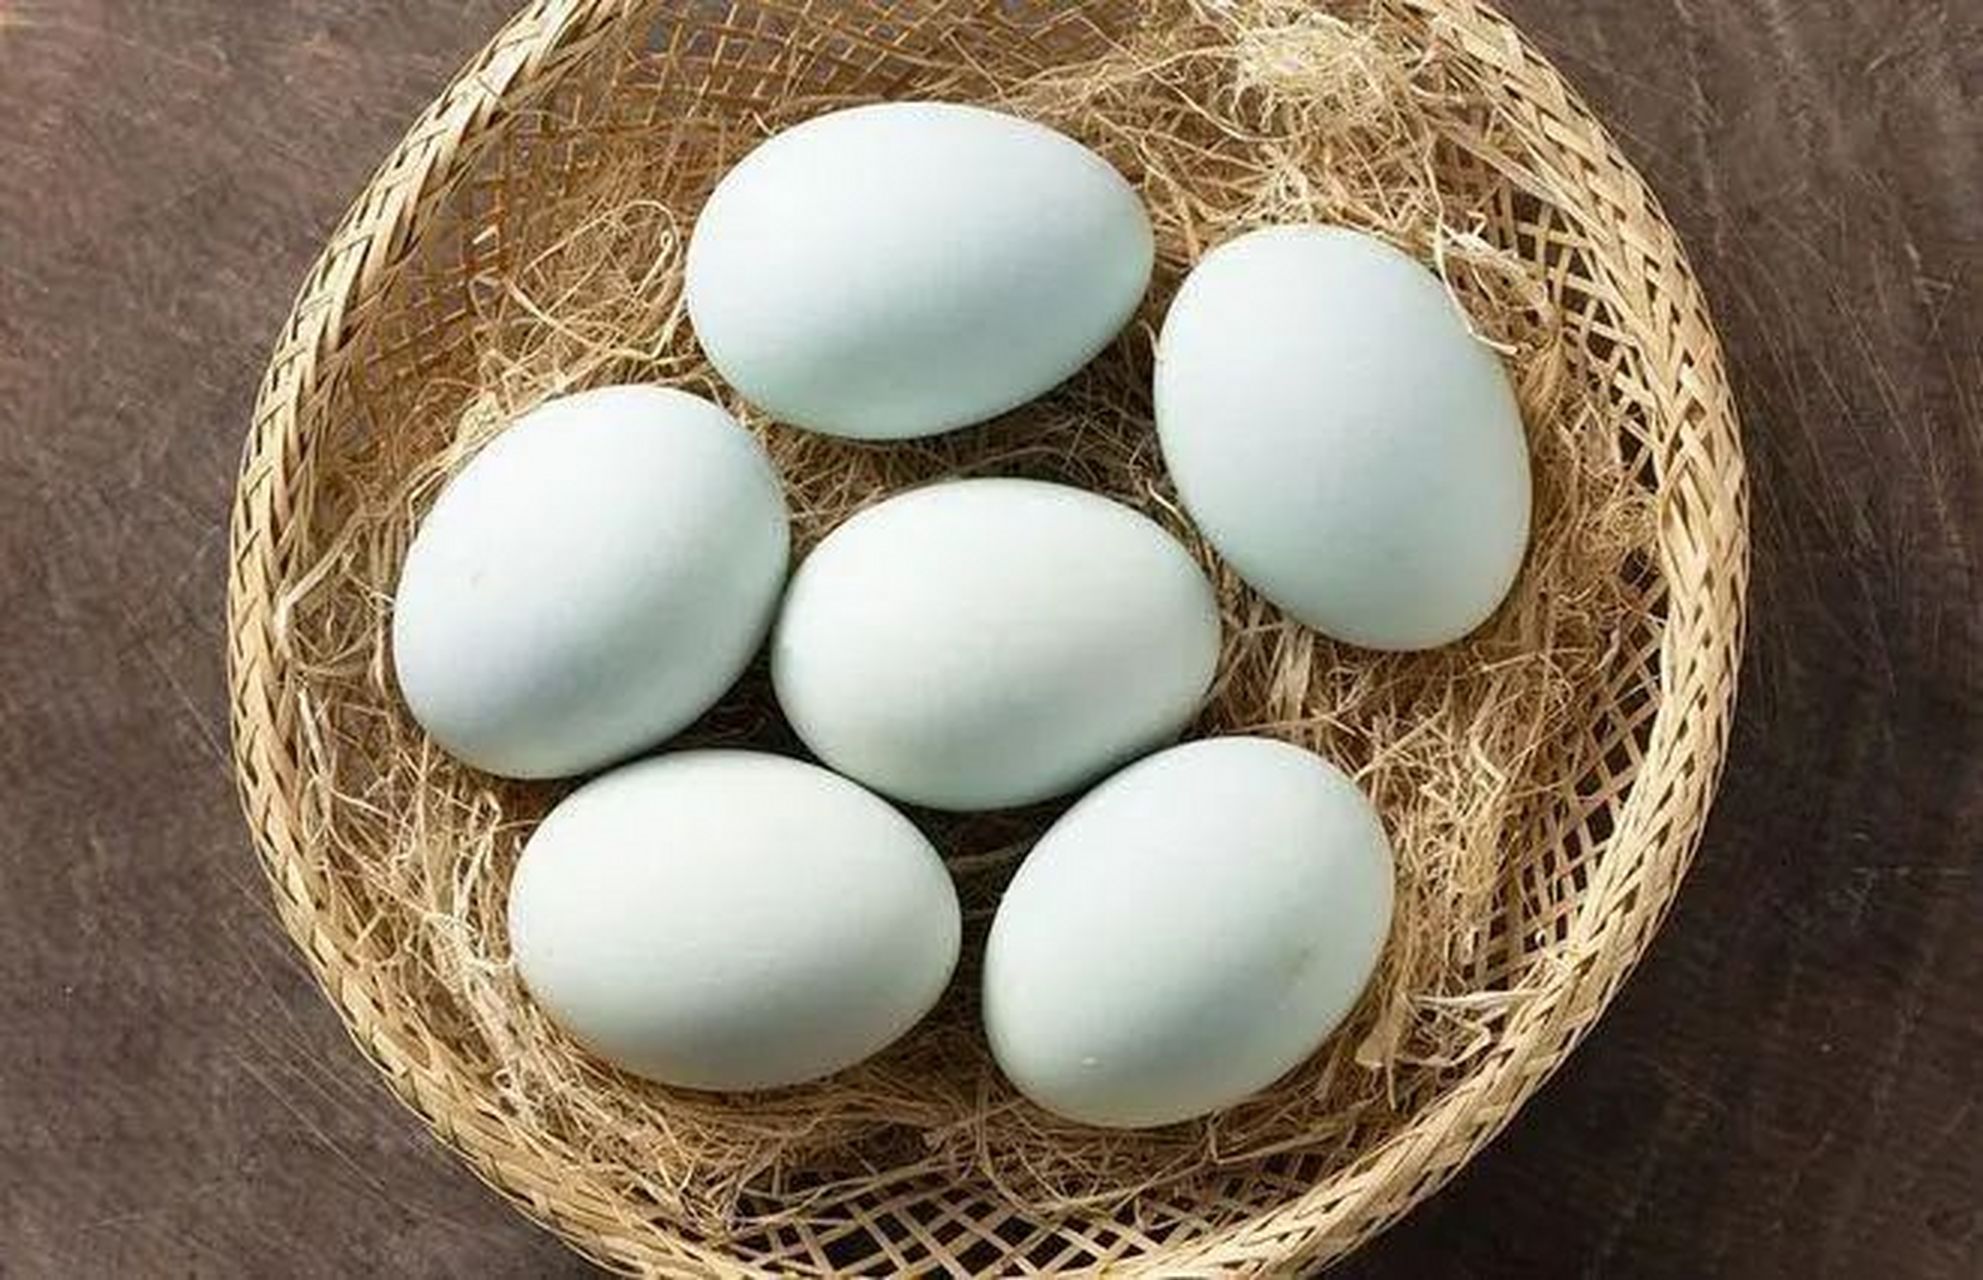 绿壳鸡蛋是华绿黑鸡,三峡黑鸡,绿壳蛋鸡所产的鸡蛋,外壳为深绿色